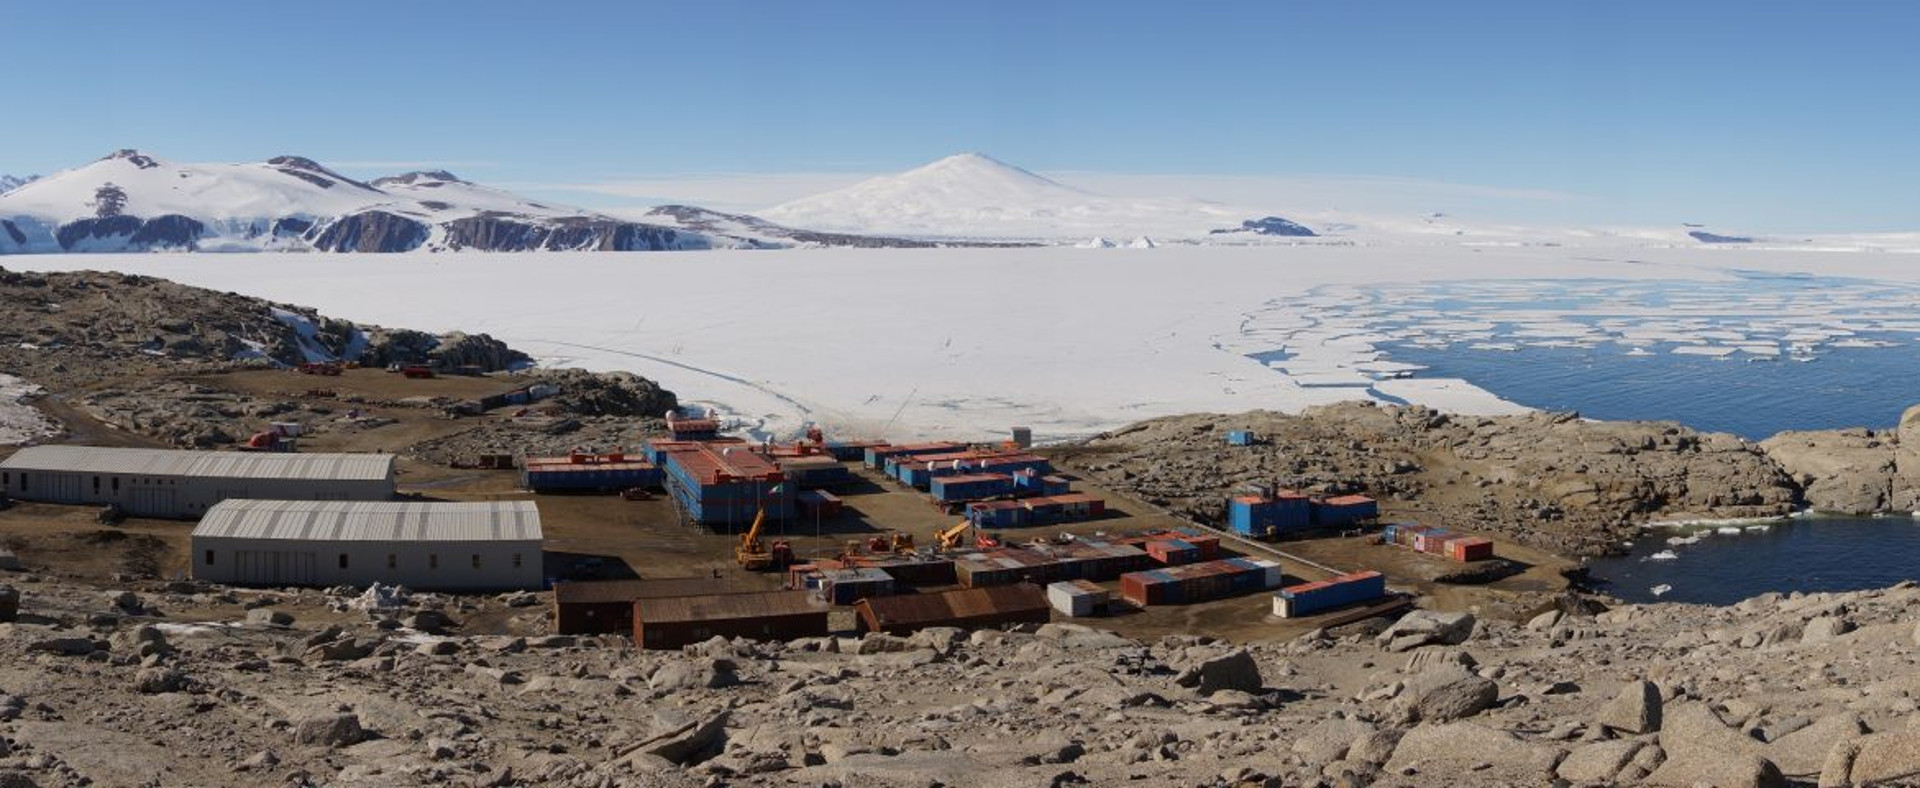 Foto: Stazione Mario Zucchelli in Antartide - dal sito http://www.italiantartide.it